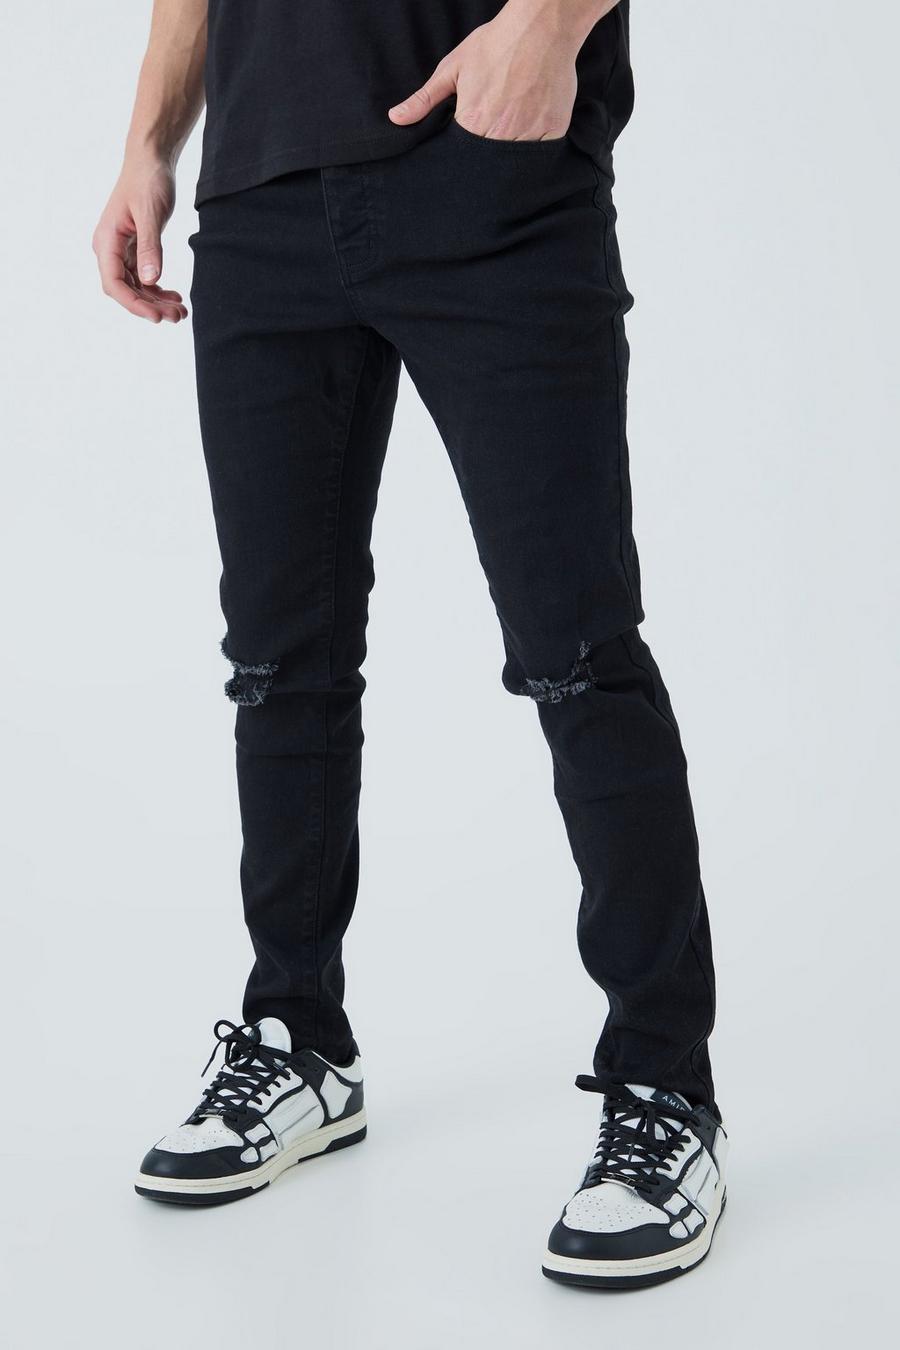 שחור nero סקיני ג'ינס עם קרעים בברכיים